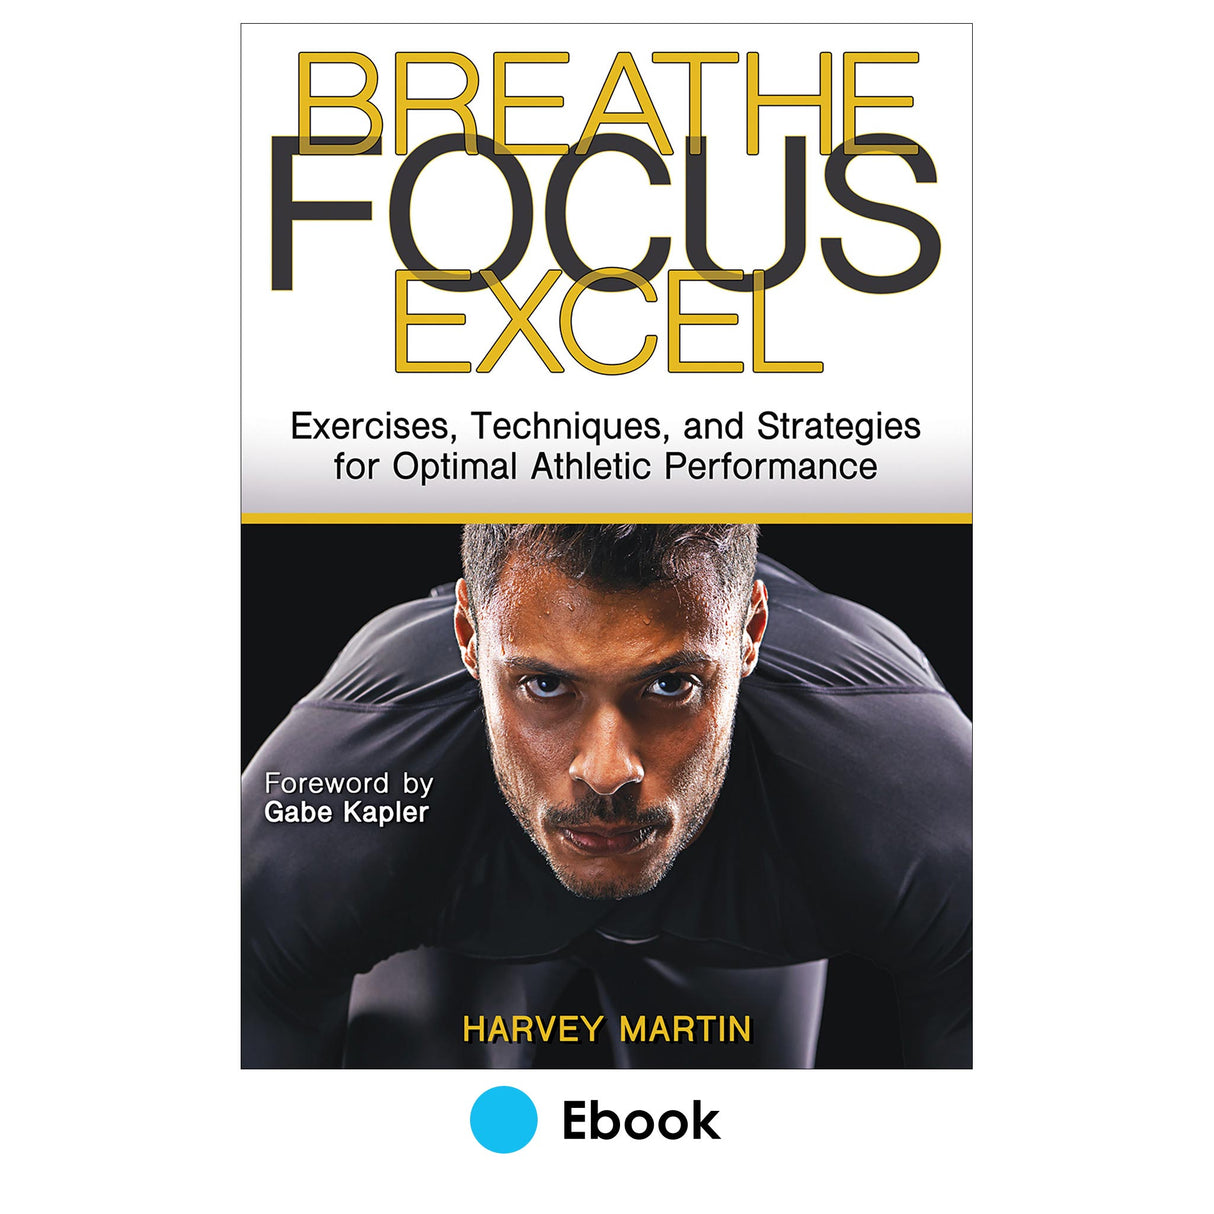 Breathe, Focus, Excel epub